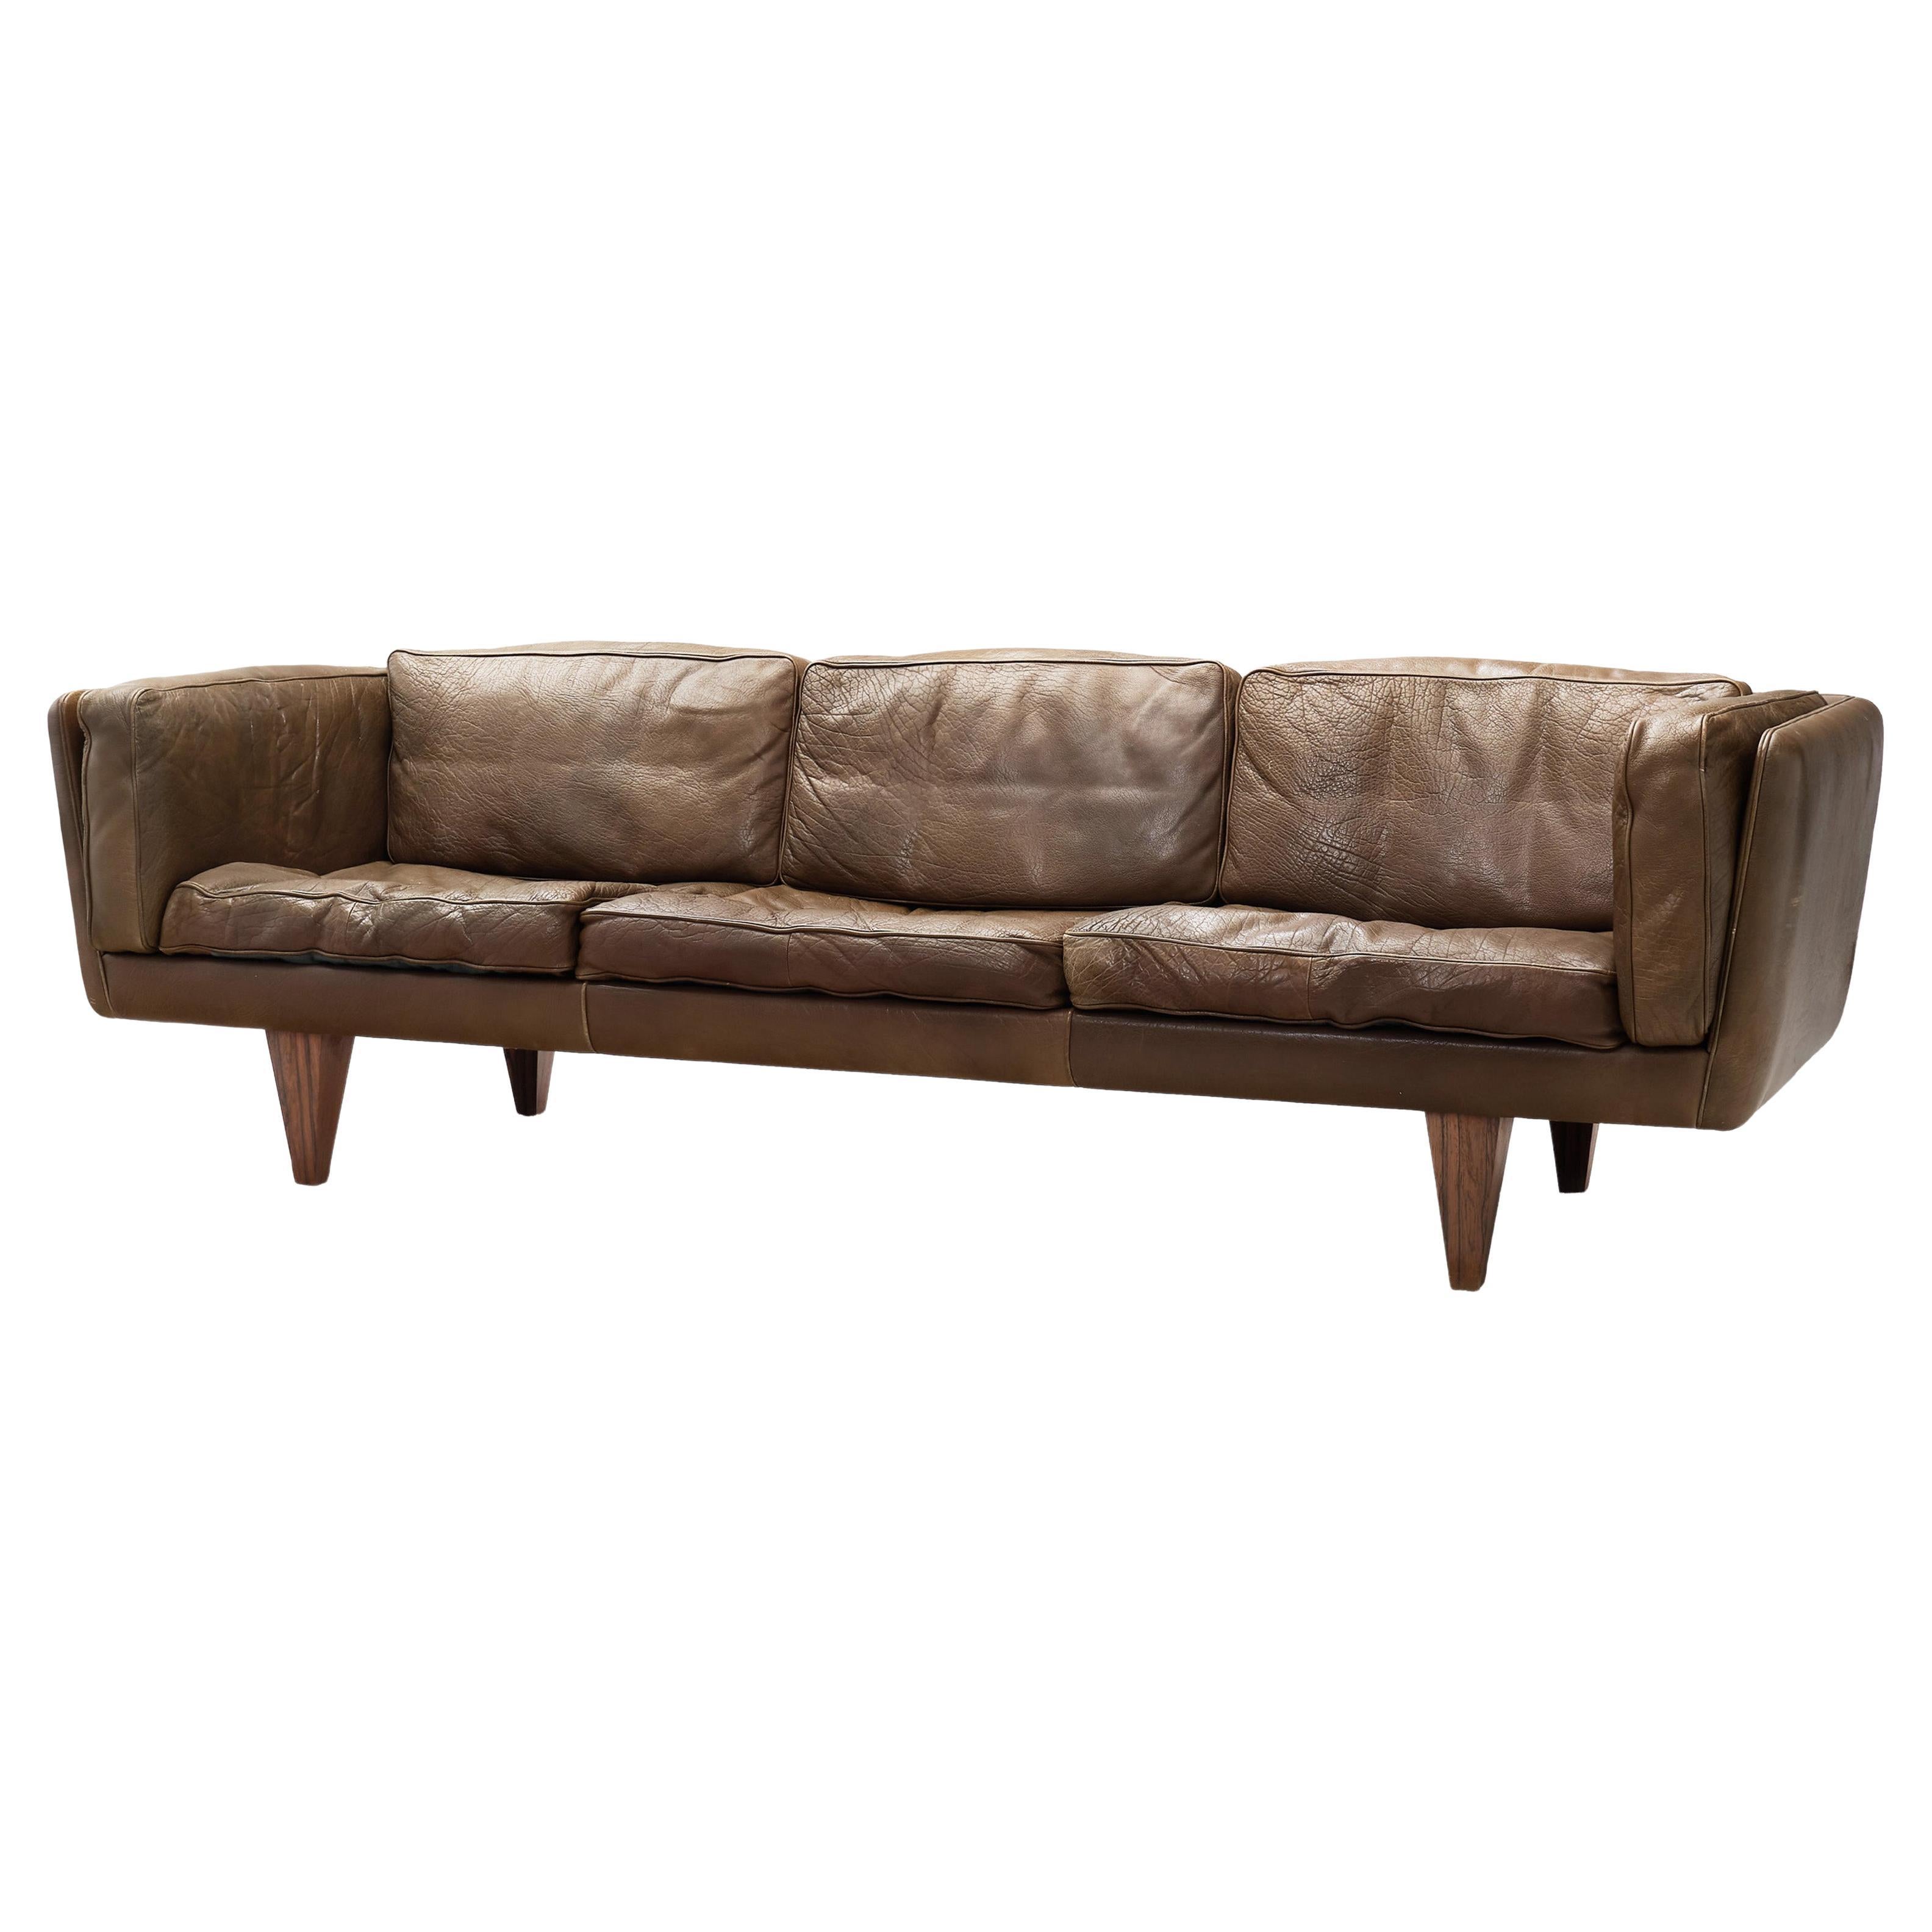 Illum Wikkelsø "V11" Brown Leather Sofa for Holger Christiansen, Denmark 1960s For Sale